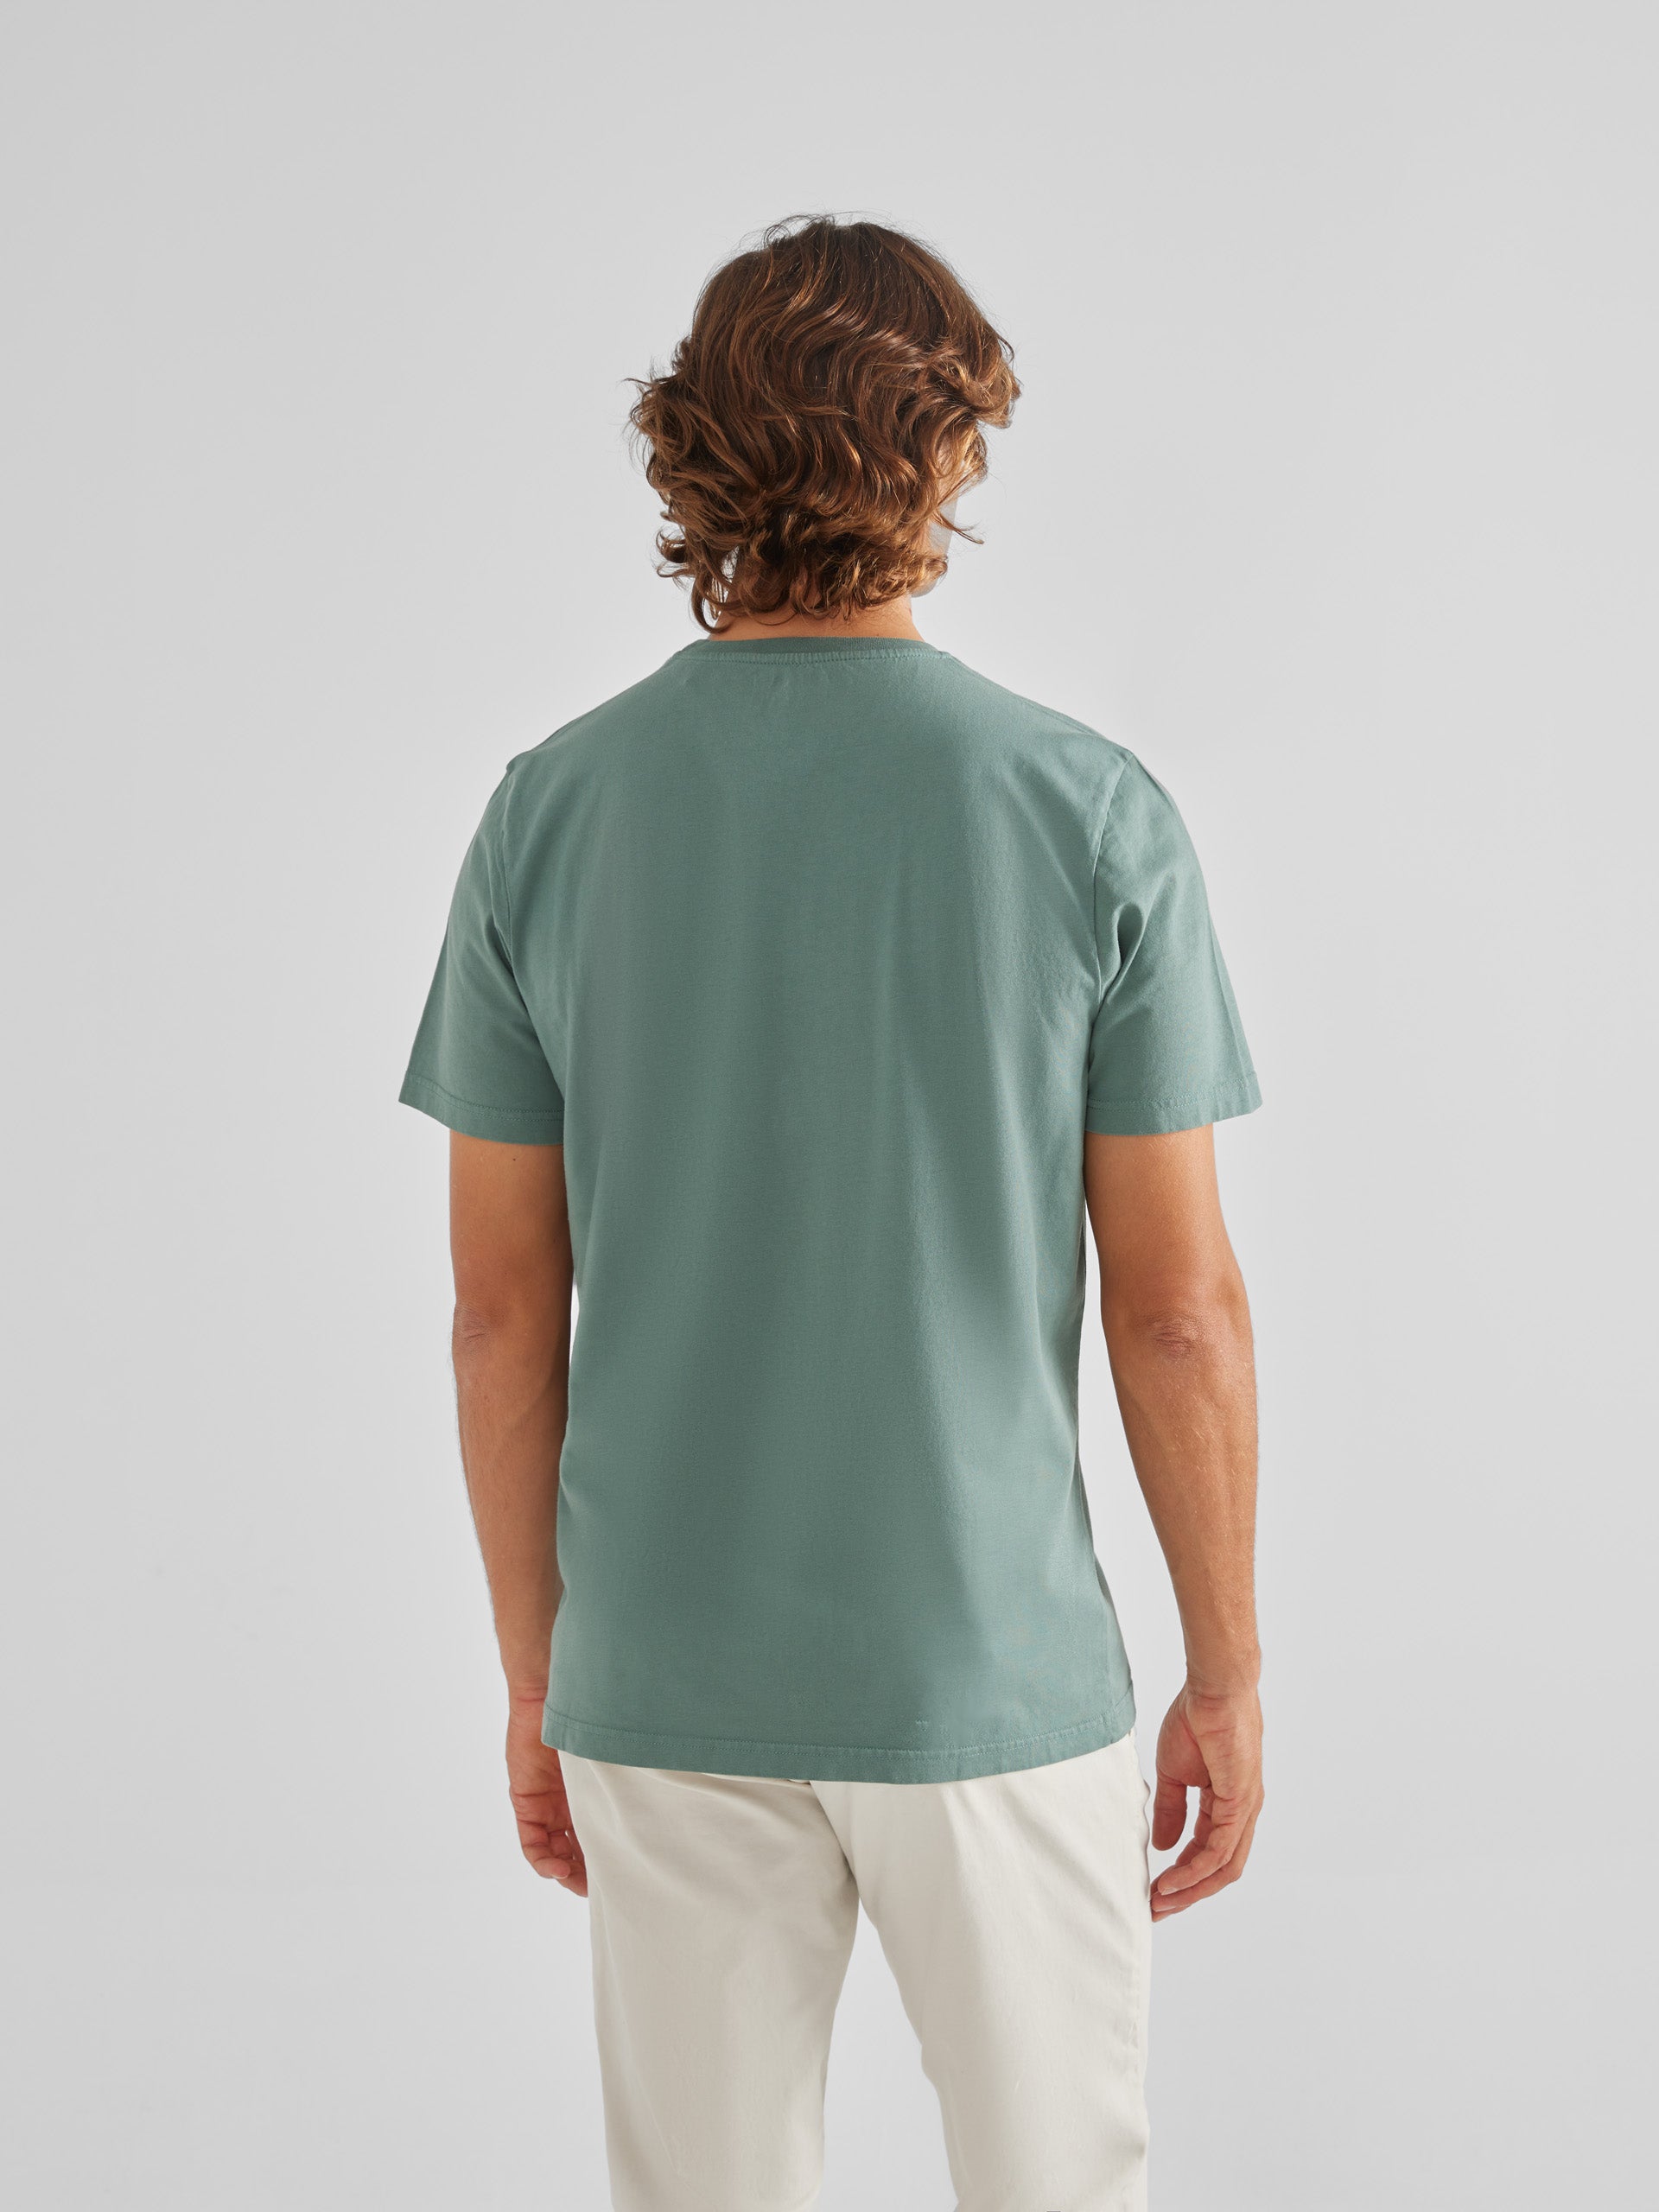 T-shirt mini raquette uni vert